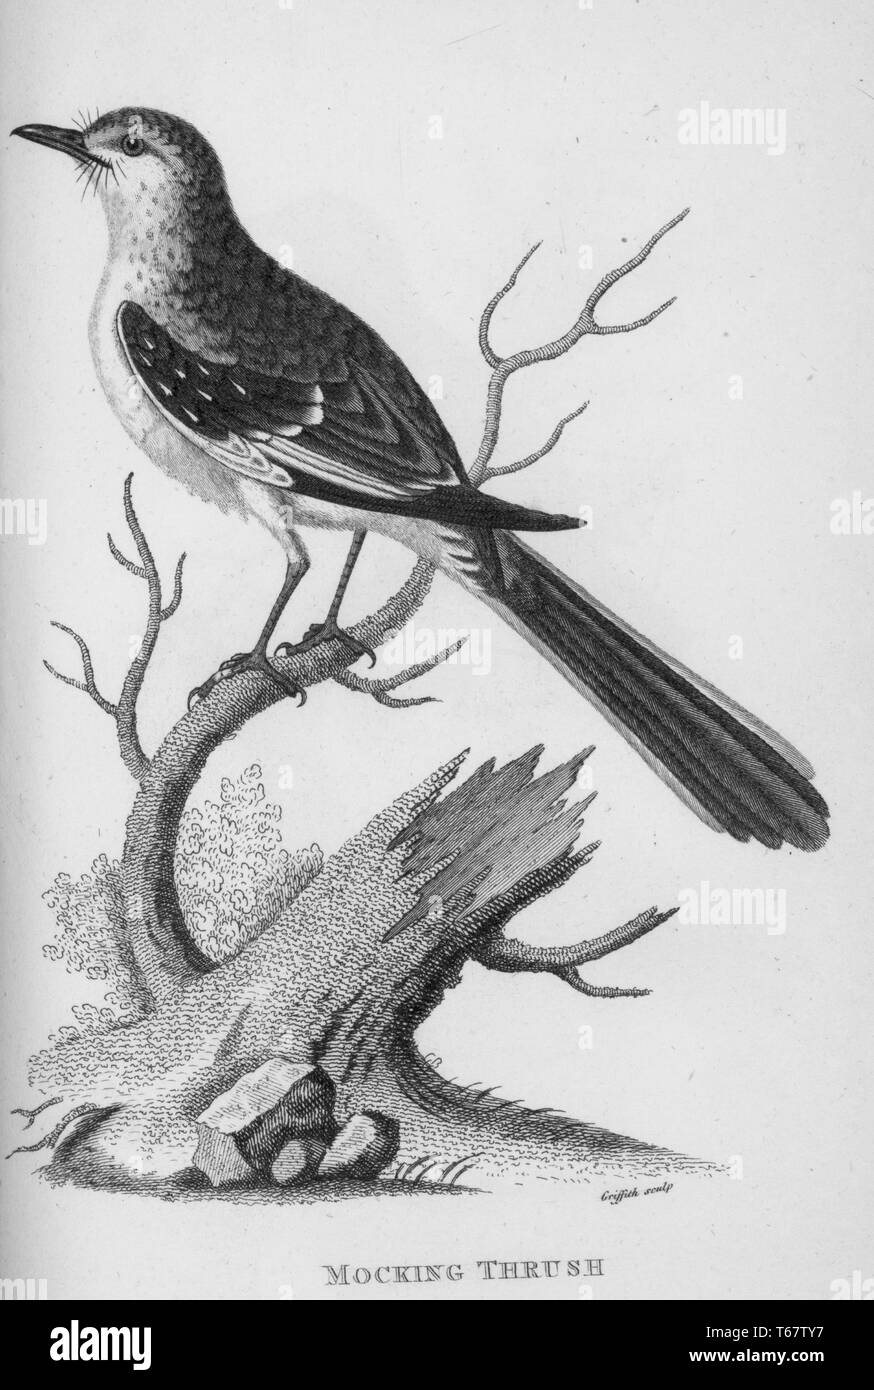 Une gravure d'une grive se moquer du livre 'Zoological conférences prononcées à l'Institution royale' par George Shaw, 1809. À partir de la Bibliothèque publique de New York. Banque D'Images